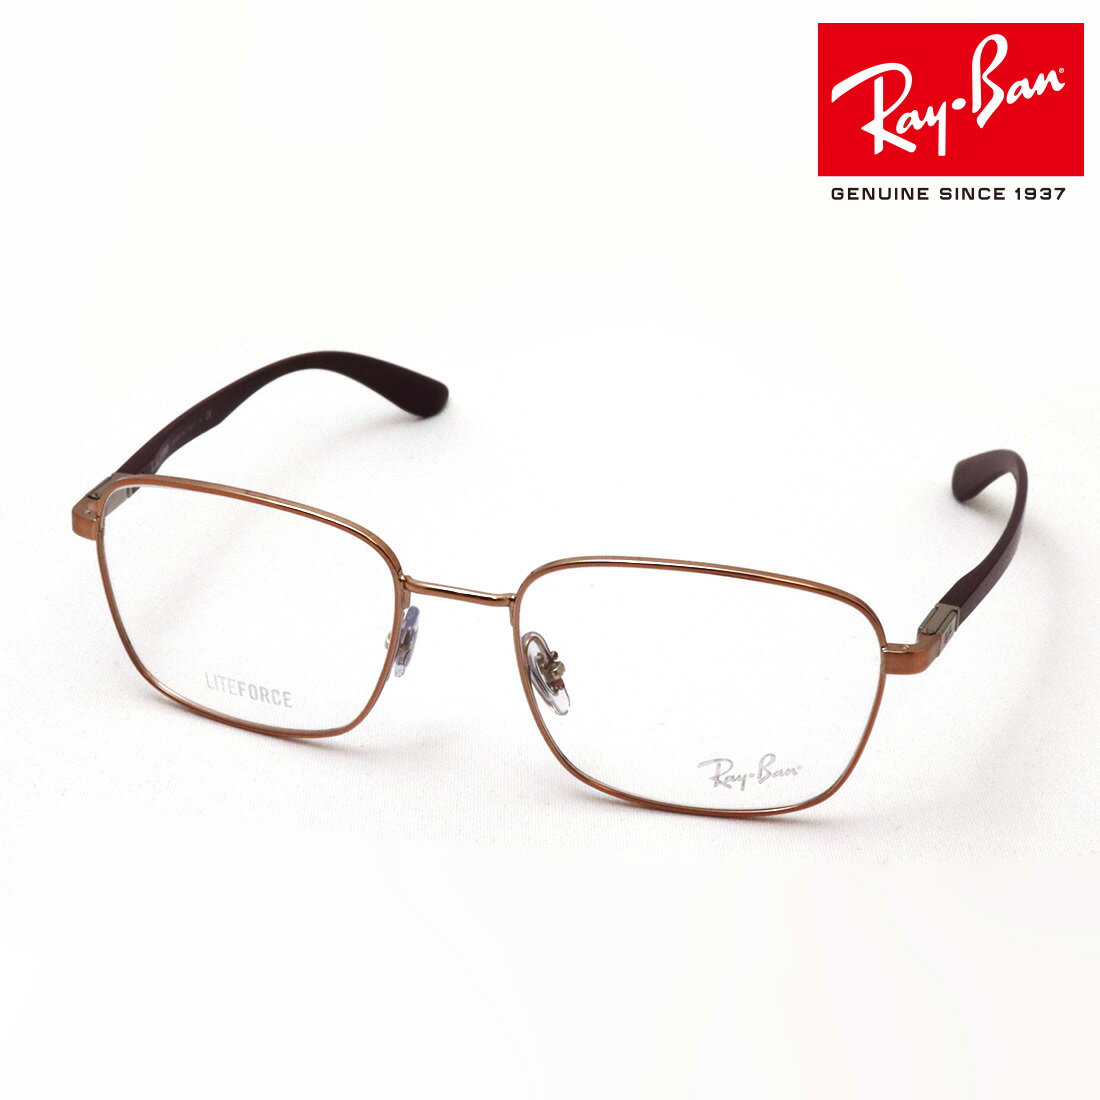 プレミア生産終了モデル 正規レイバン日本最大級の品揃え レイバン メガネ フレーム Ray-Ban RX6478 2943 伊達メガネ 度付き ブルーライト カット 眼鏡 メタル RayBan Made In Italy スクエア ブラウン系